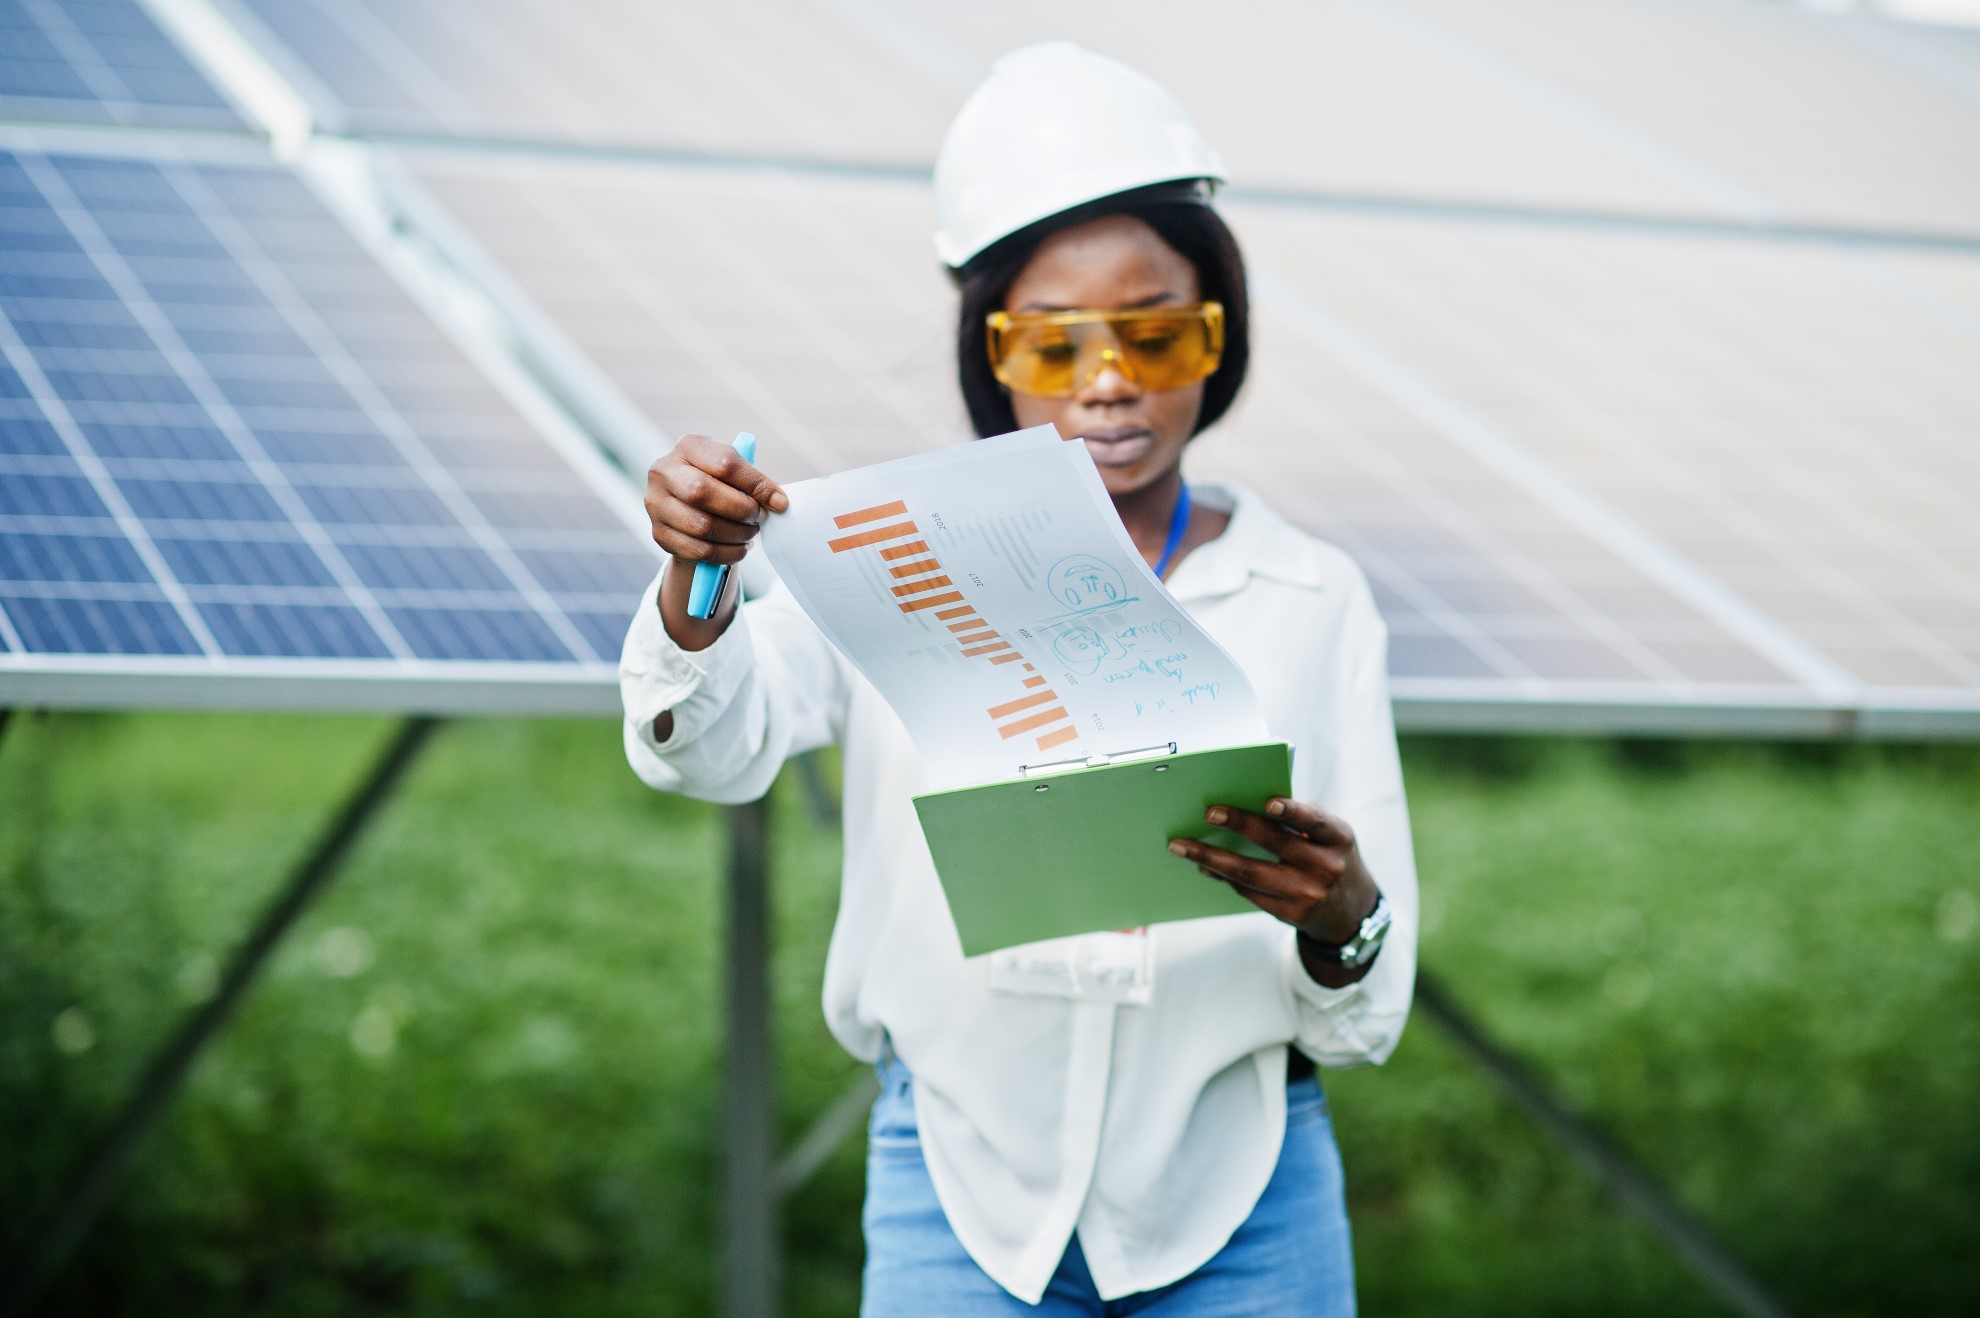 Aké sú nevýhody fotovoltaiky? Na tieto by ste mali myslieť